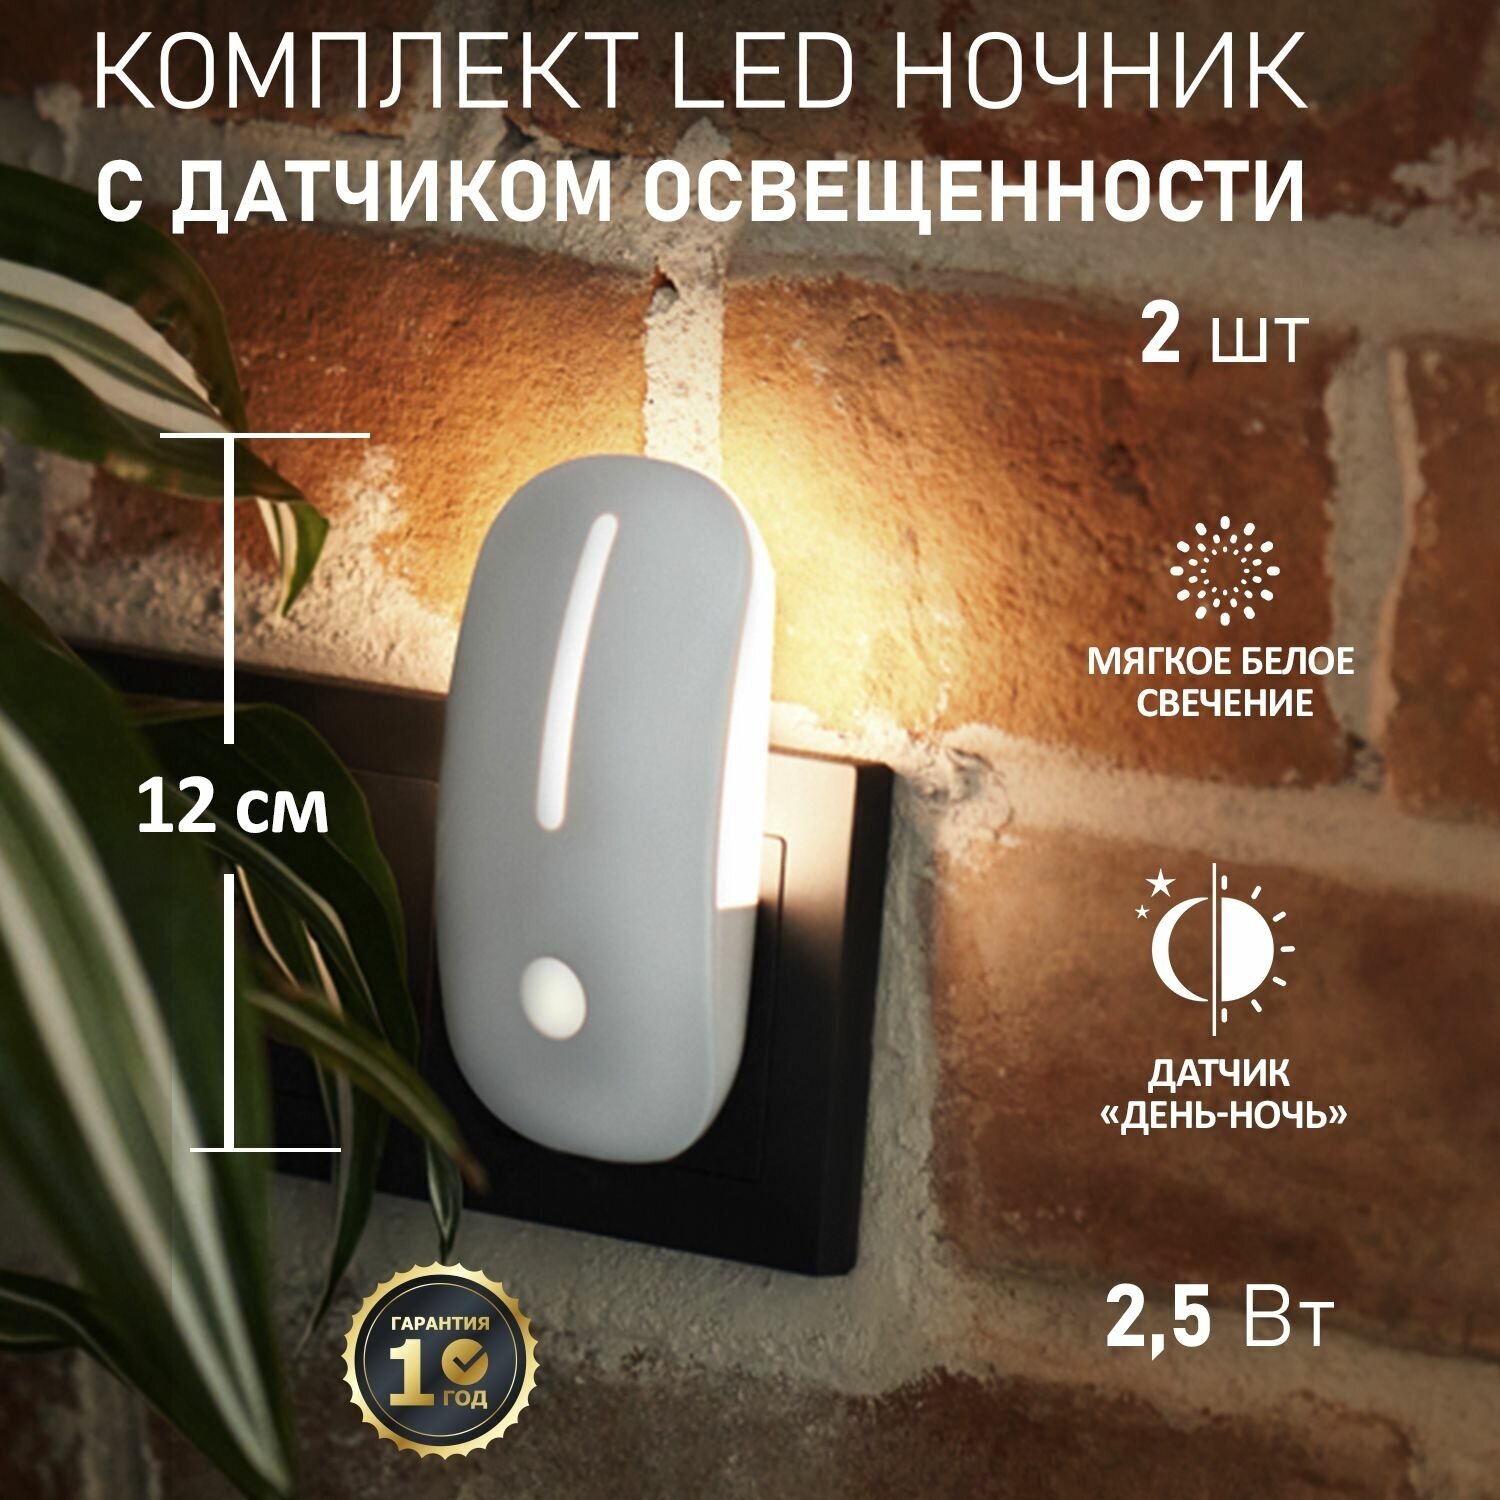 Комплект ночник PROсonnect FIREFLY-PRO датчик день-ночь для комнаты дома дачи офиса теплый свет 2 шт